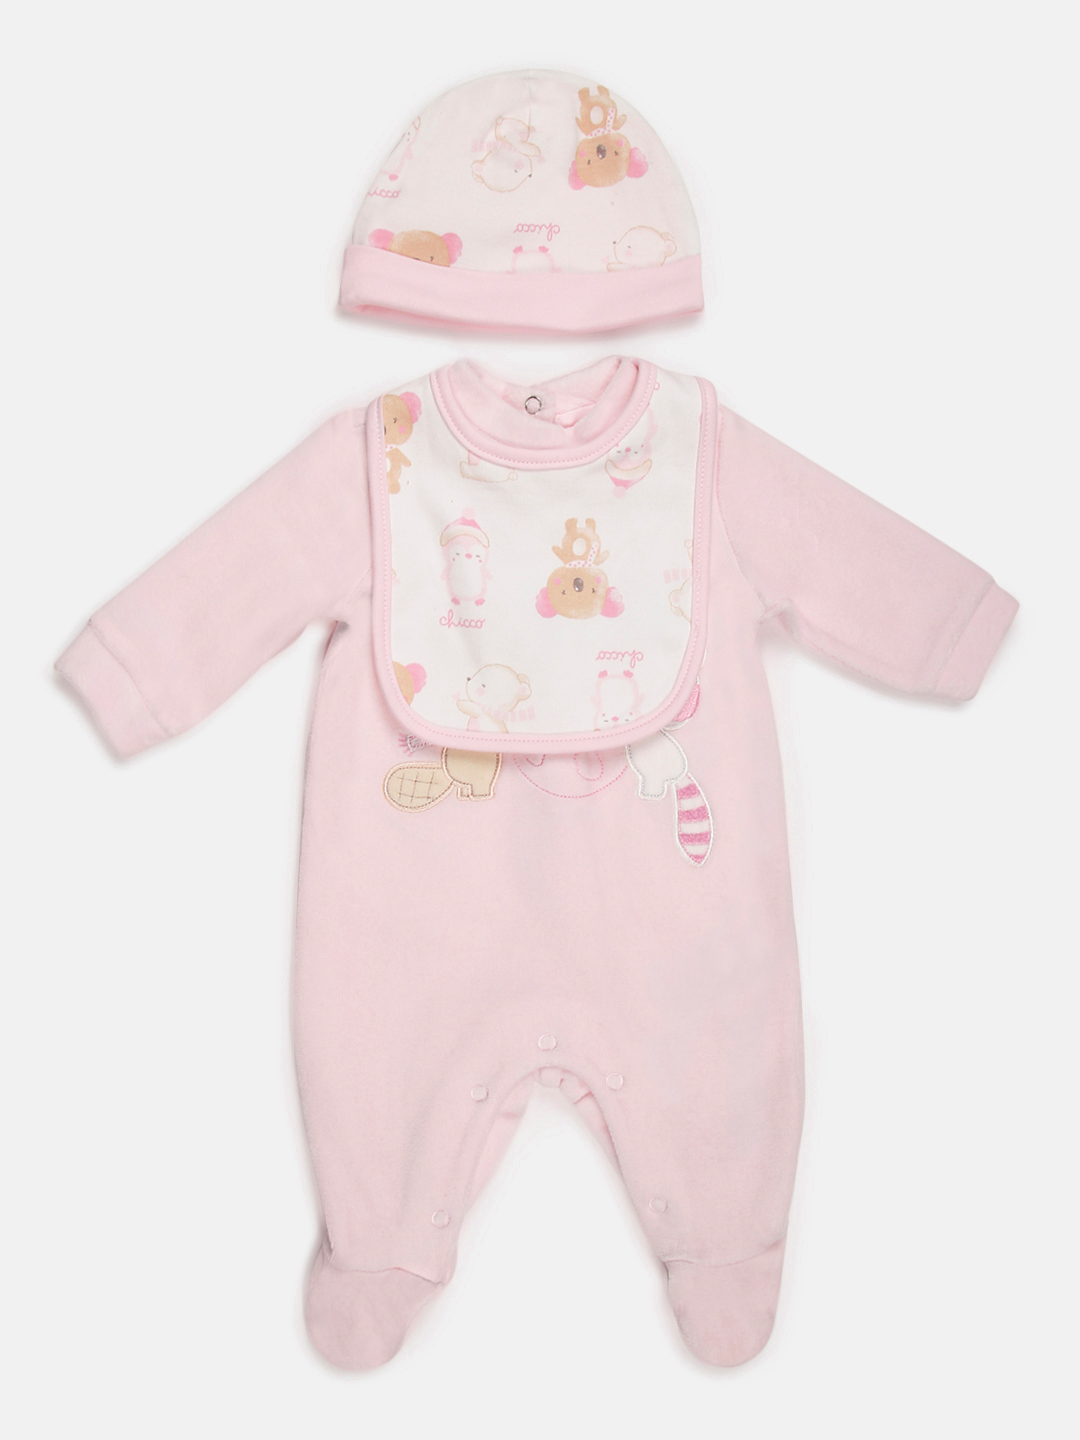 Gift Box-3 Pcs- Velour Babysuit Bib And Hat (Pink)-Pink